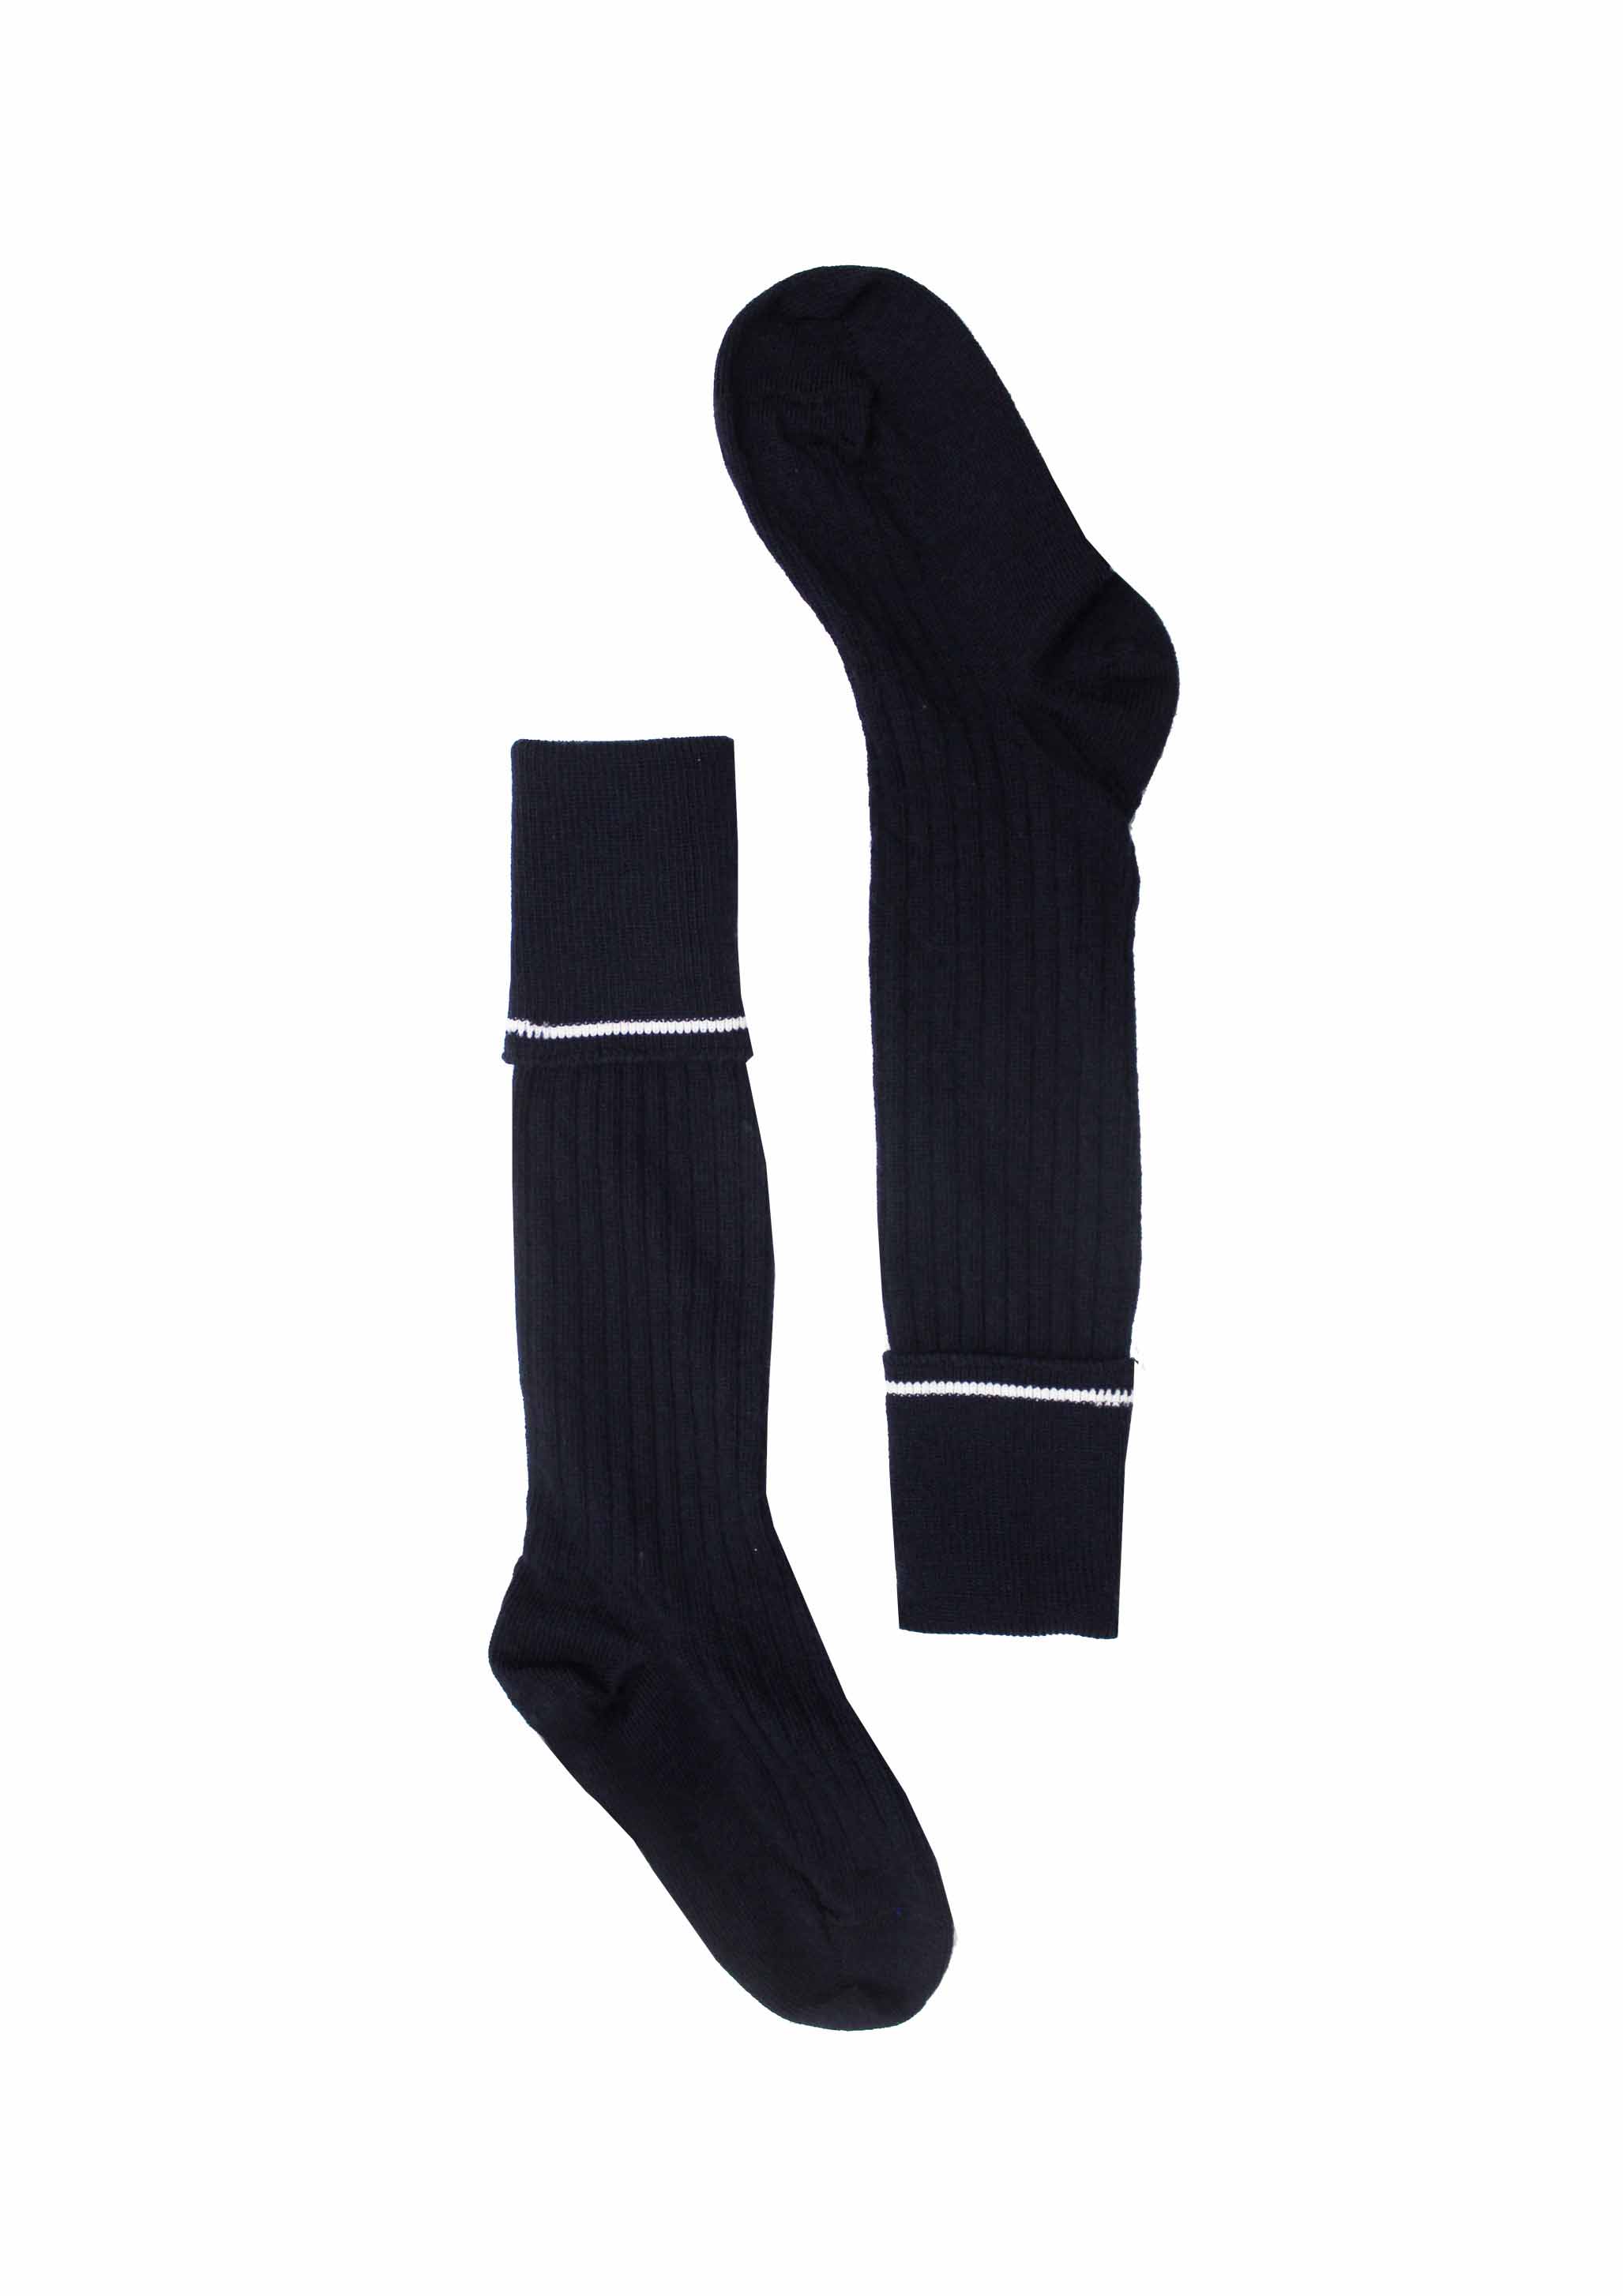 ACG Tauranga Knee High Socks | ACG Tauranga